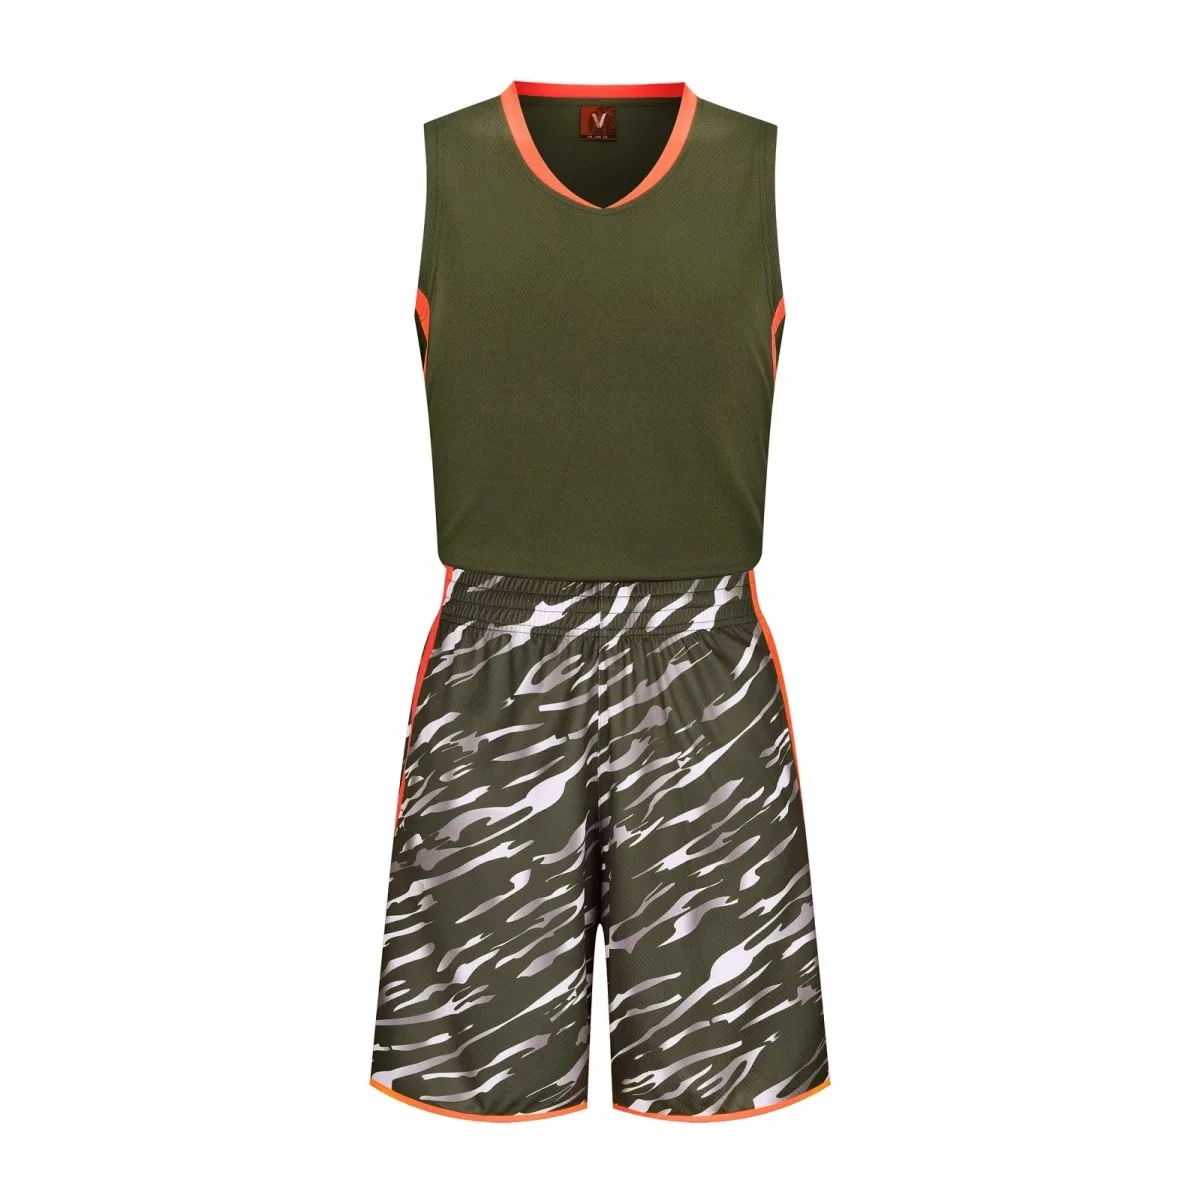 Новые камуфляжные костюмы баскетбольные, майки для баскетбола и шорты, Мужская баскетбольная Джерси игровая тренировочная спортивная одежда